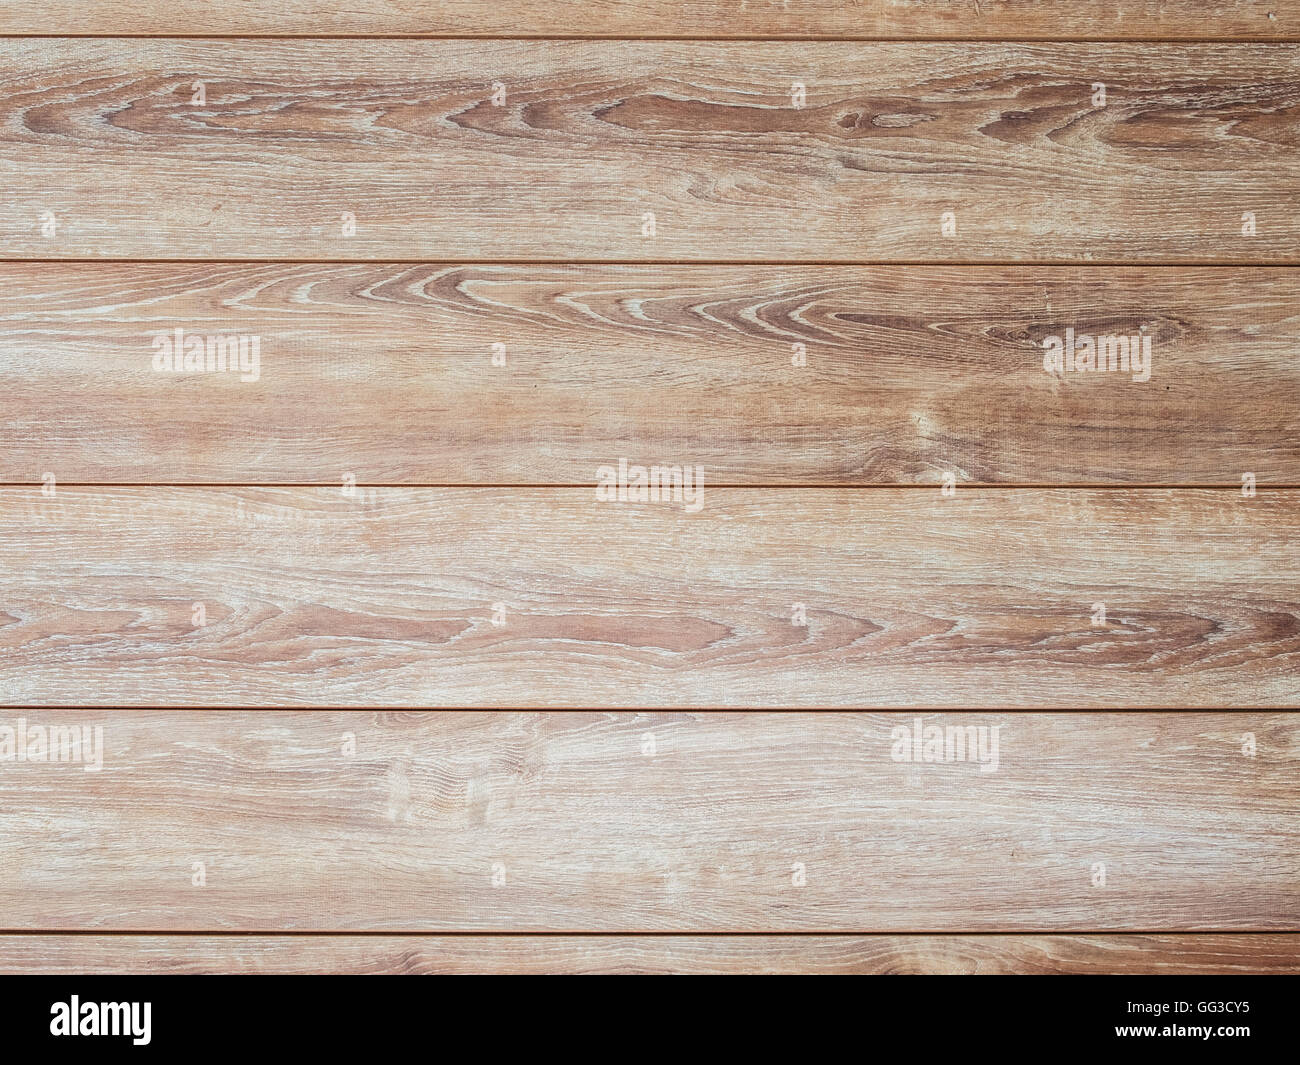 Wooden background parquet Stock Photo